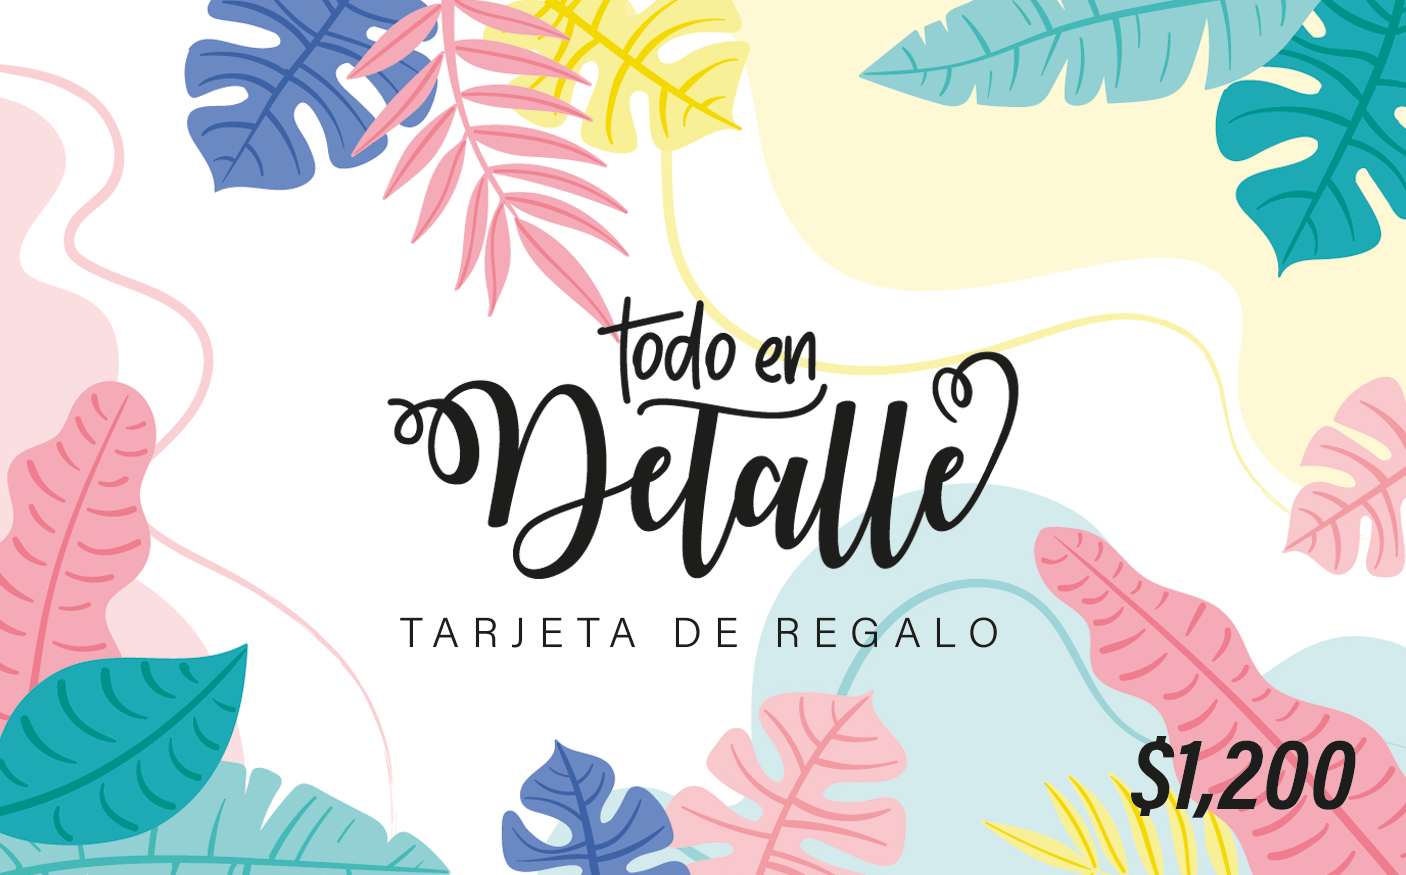 Tarjeta de Regalo - Todo en Detalle